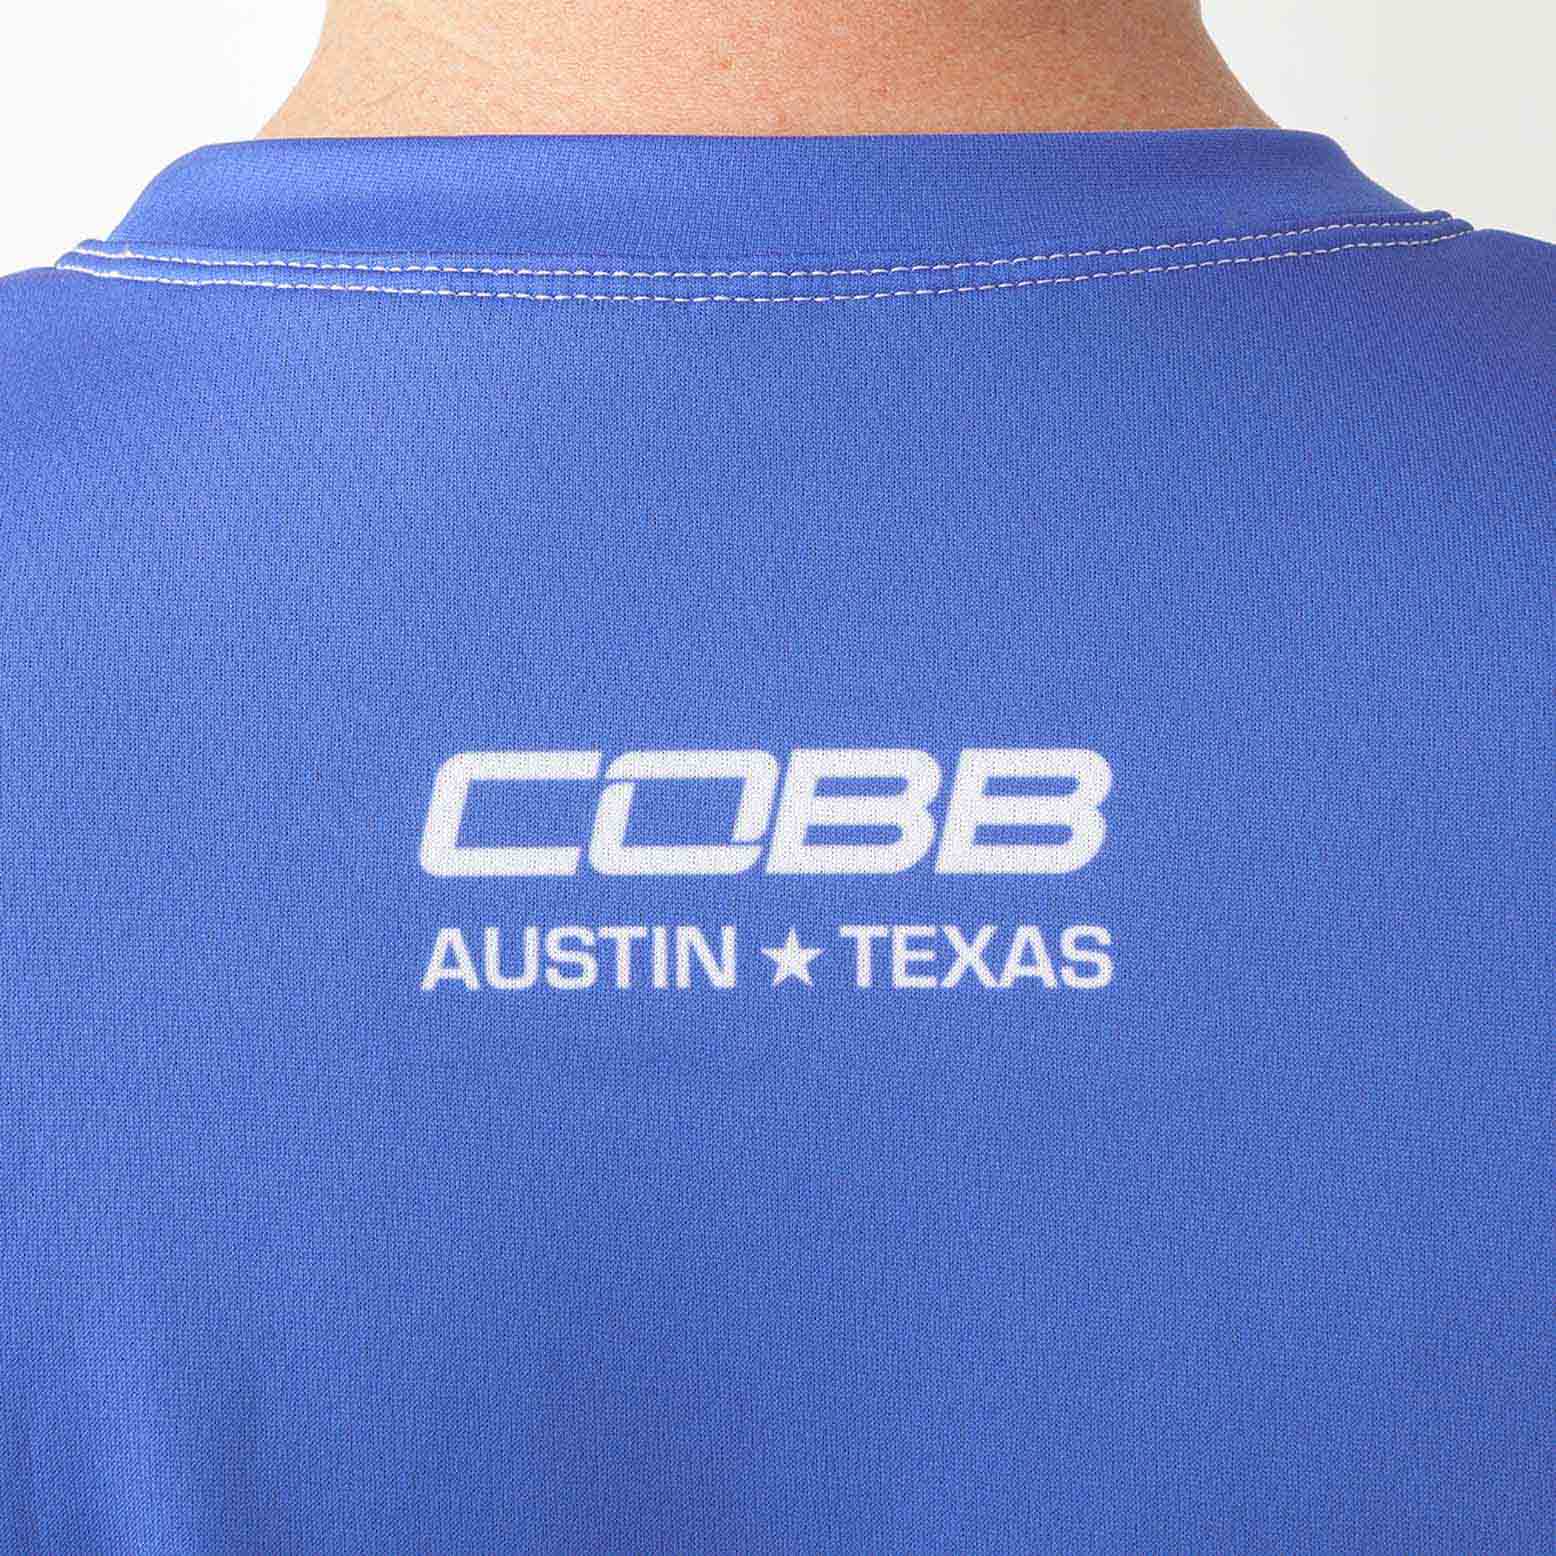 COBB Tuning Subaru Shirt